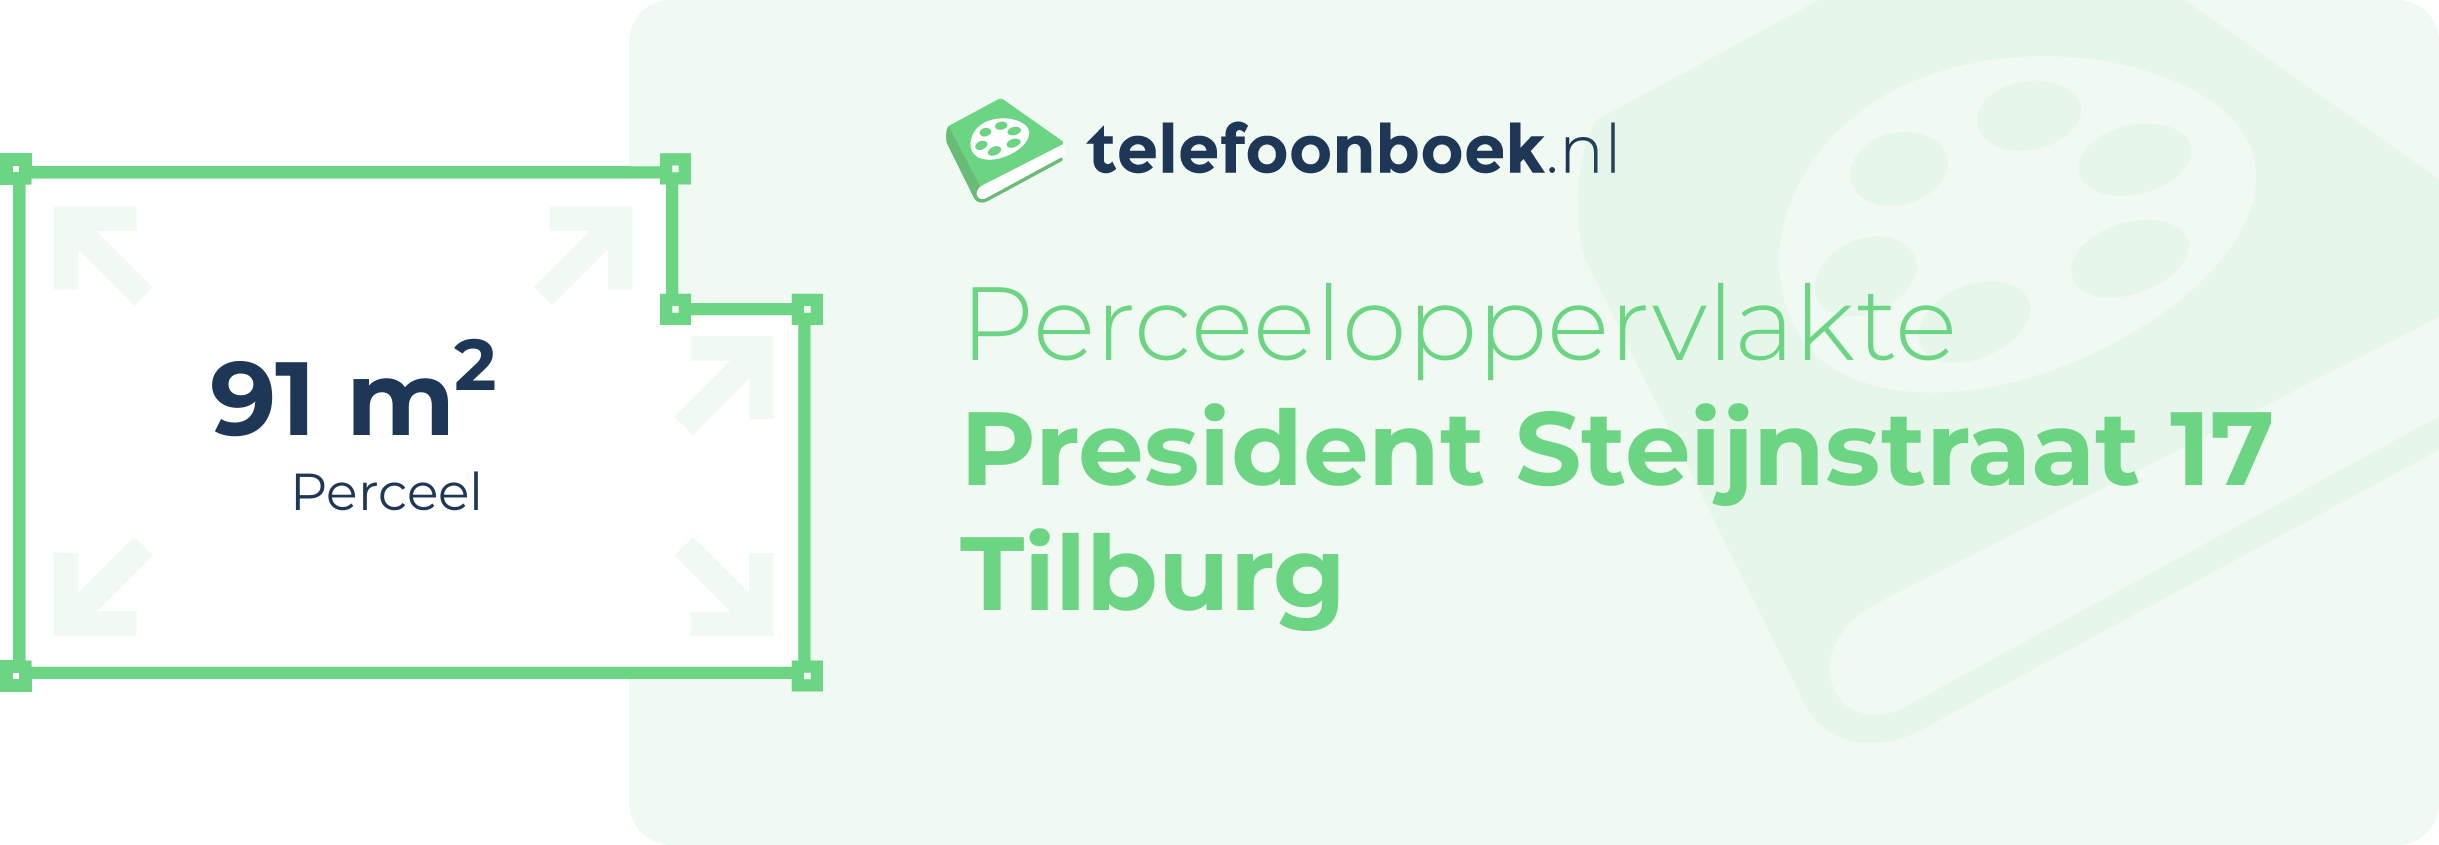 Perceeloppervlakte President Steijnstraat 17 Tilburg